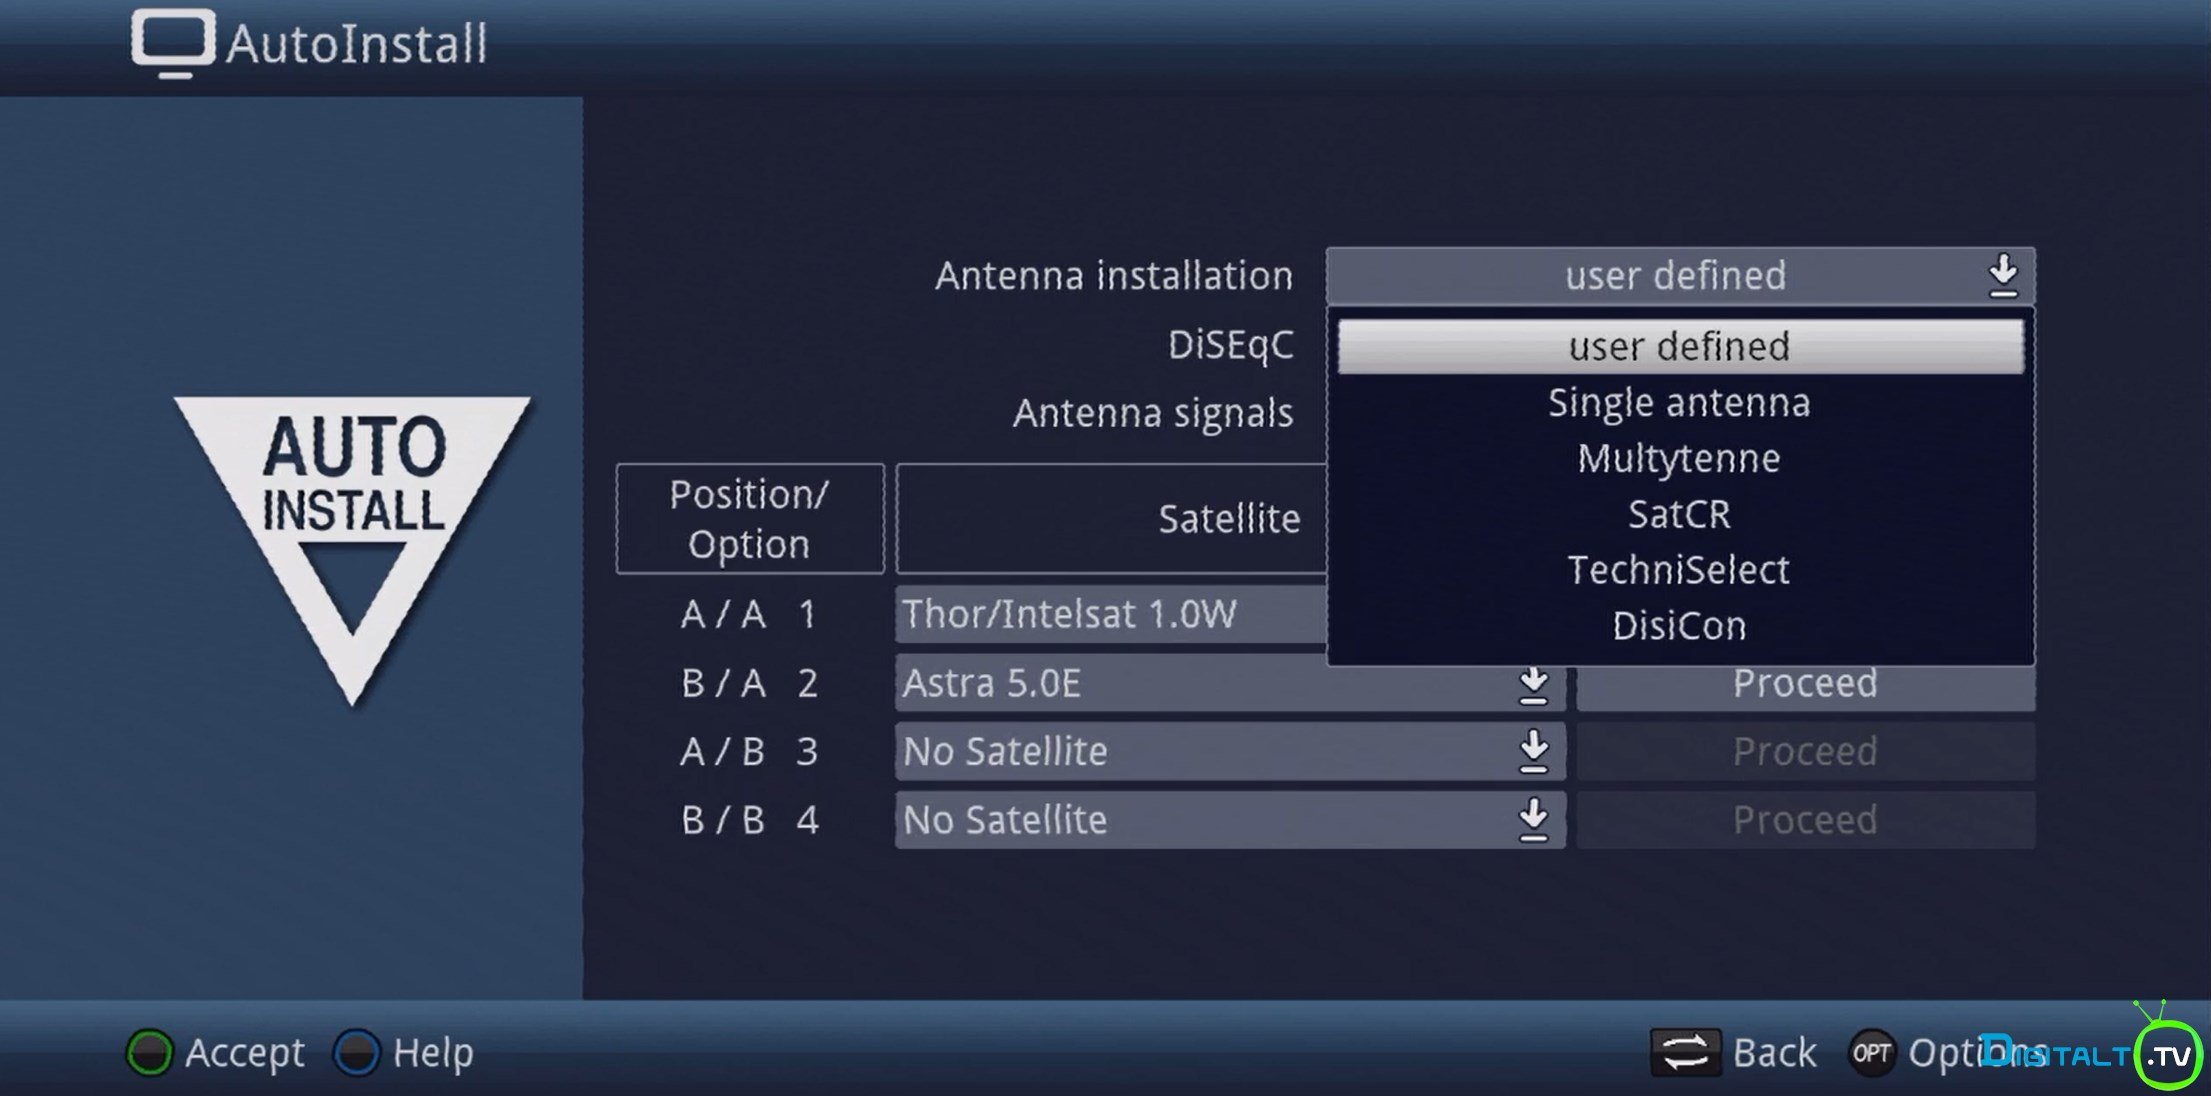 technisat-stc-uhd-install-satlnb